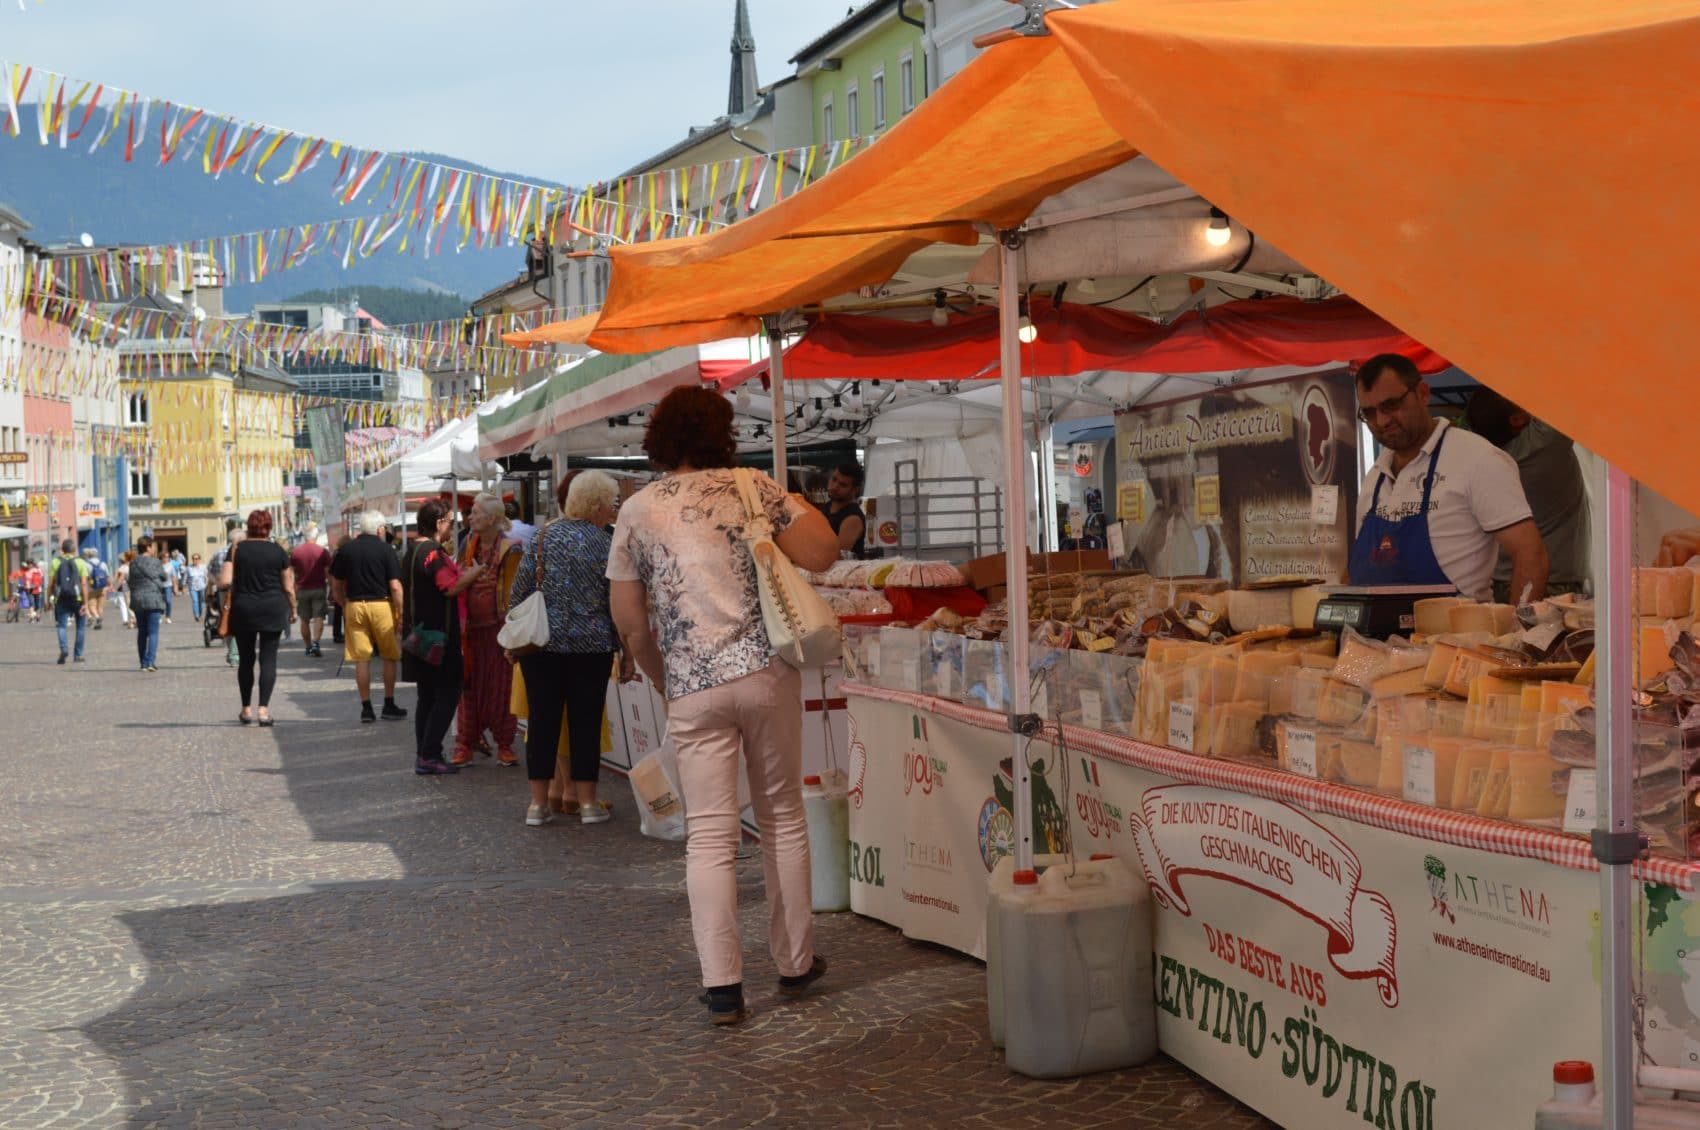 Ab Montag gastiert der Italo-Markt wieder in der Villacher Innenstadt. Fünf Tage lang werden Marktfieranten aus der Toskana, Sizilien, Sardinien, Umbrien und anderen Regionen Italiens, das einzigartige italienische Marktflair wieder auf den Hauptplatz bringen.